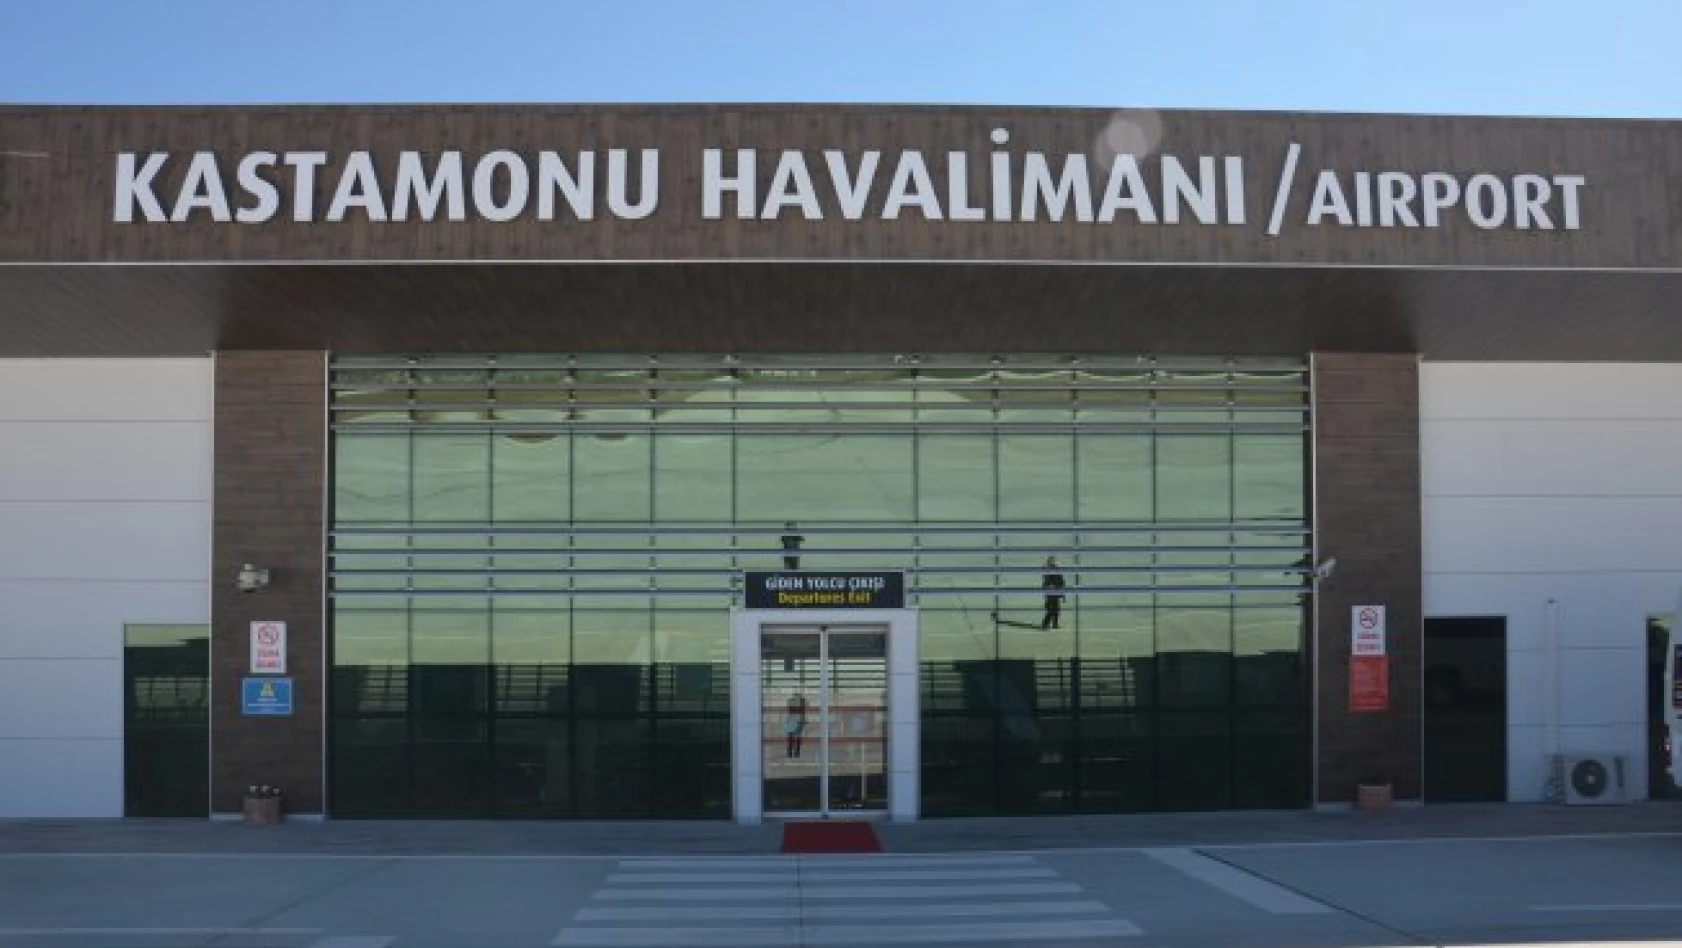 Kastamonu Havalimanı istatistikleri açıklandı